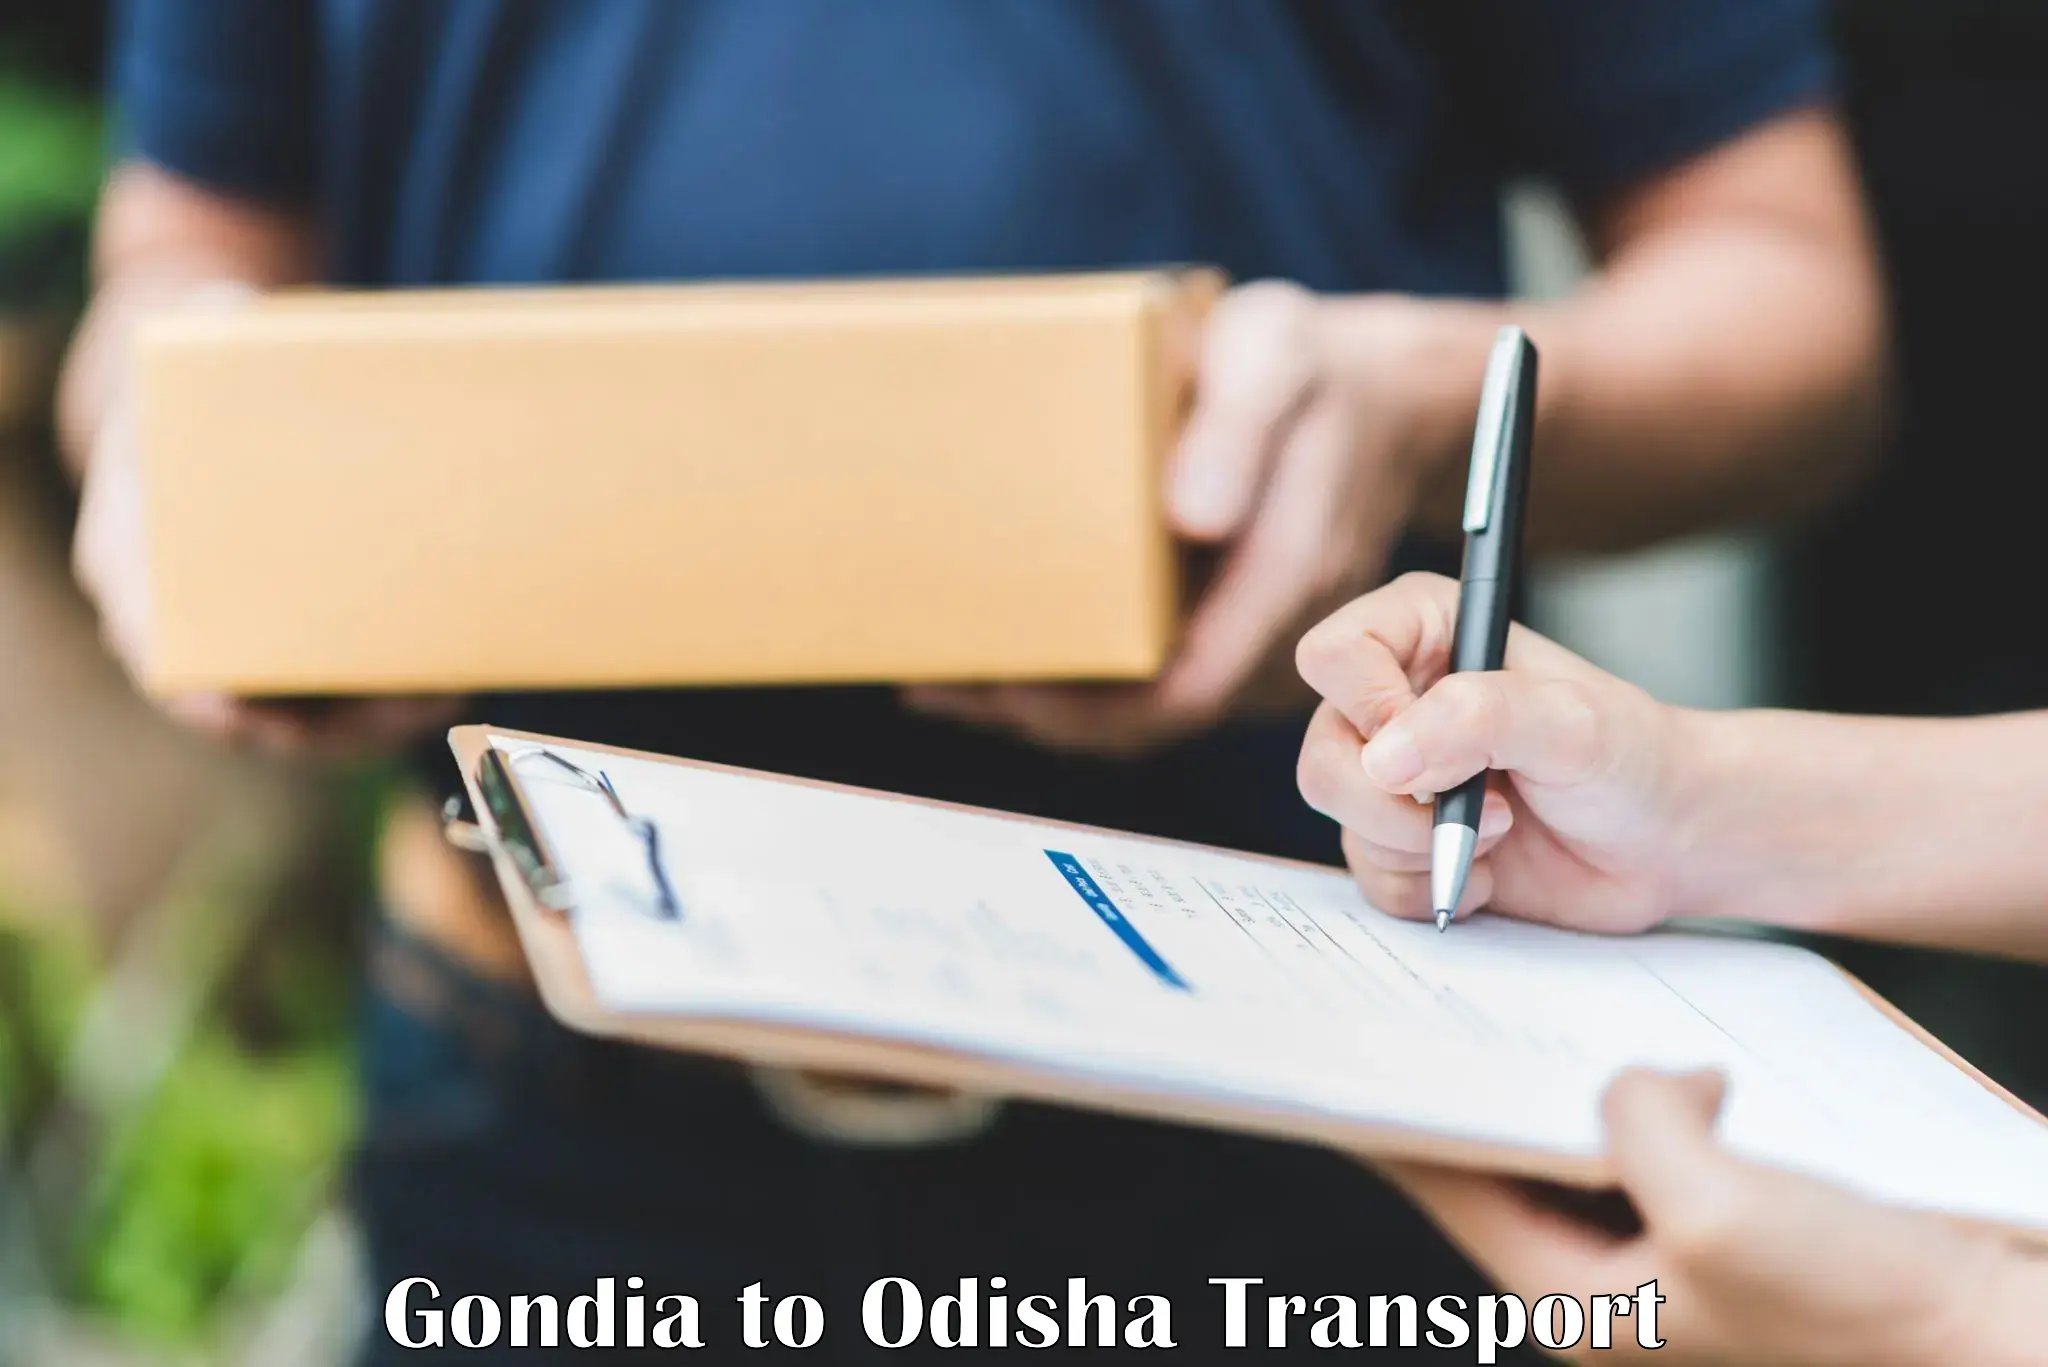 Nationwide transport services Gondia to Odisha